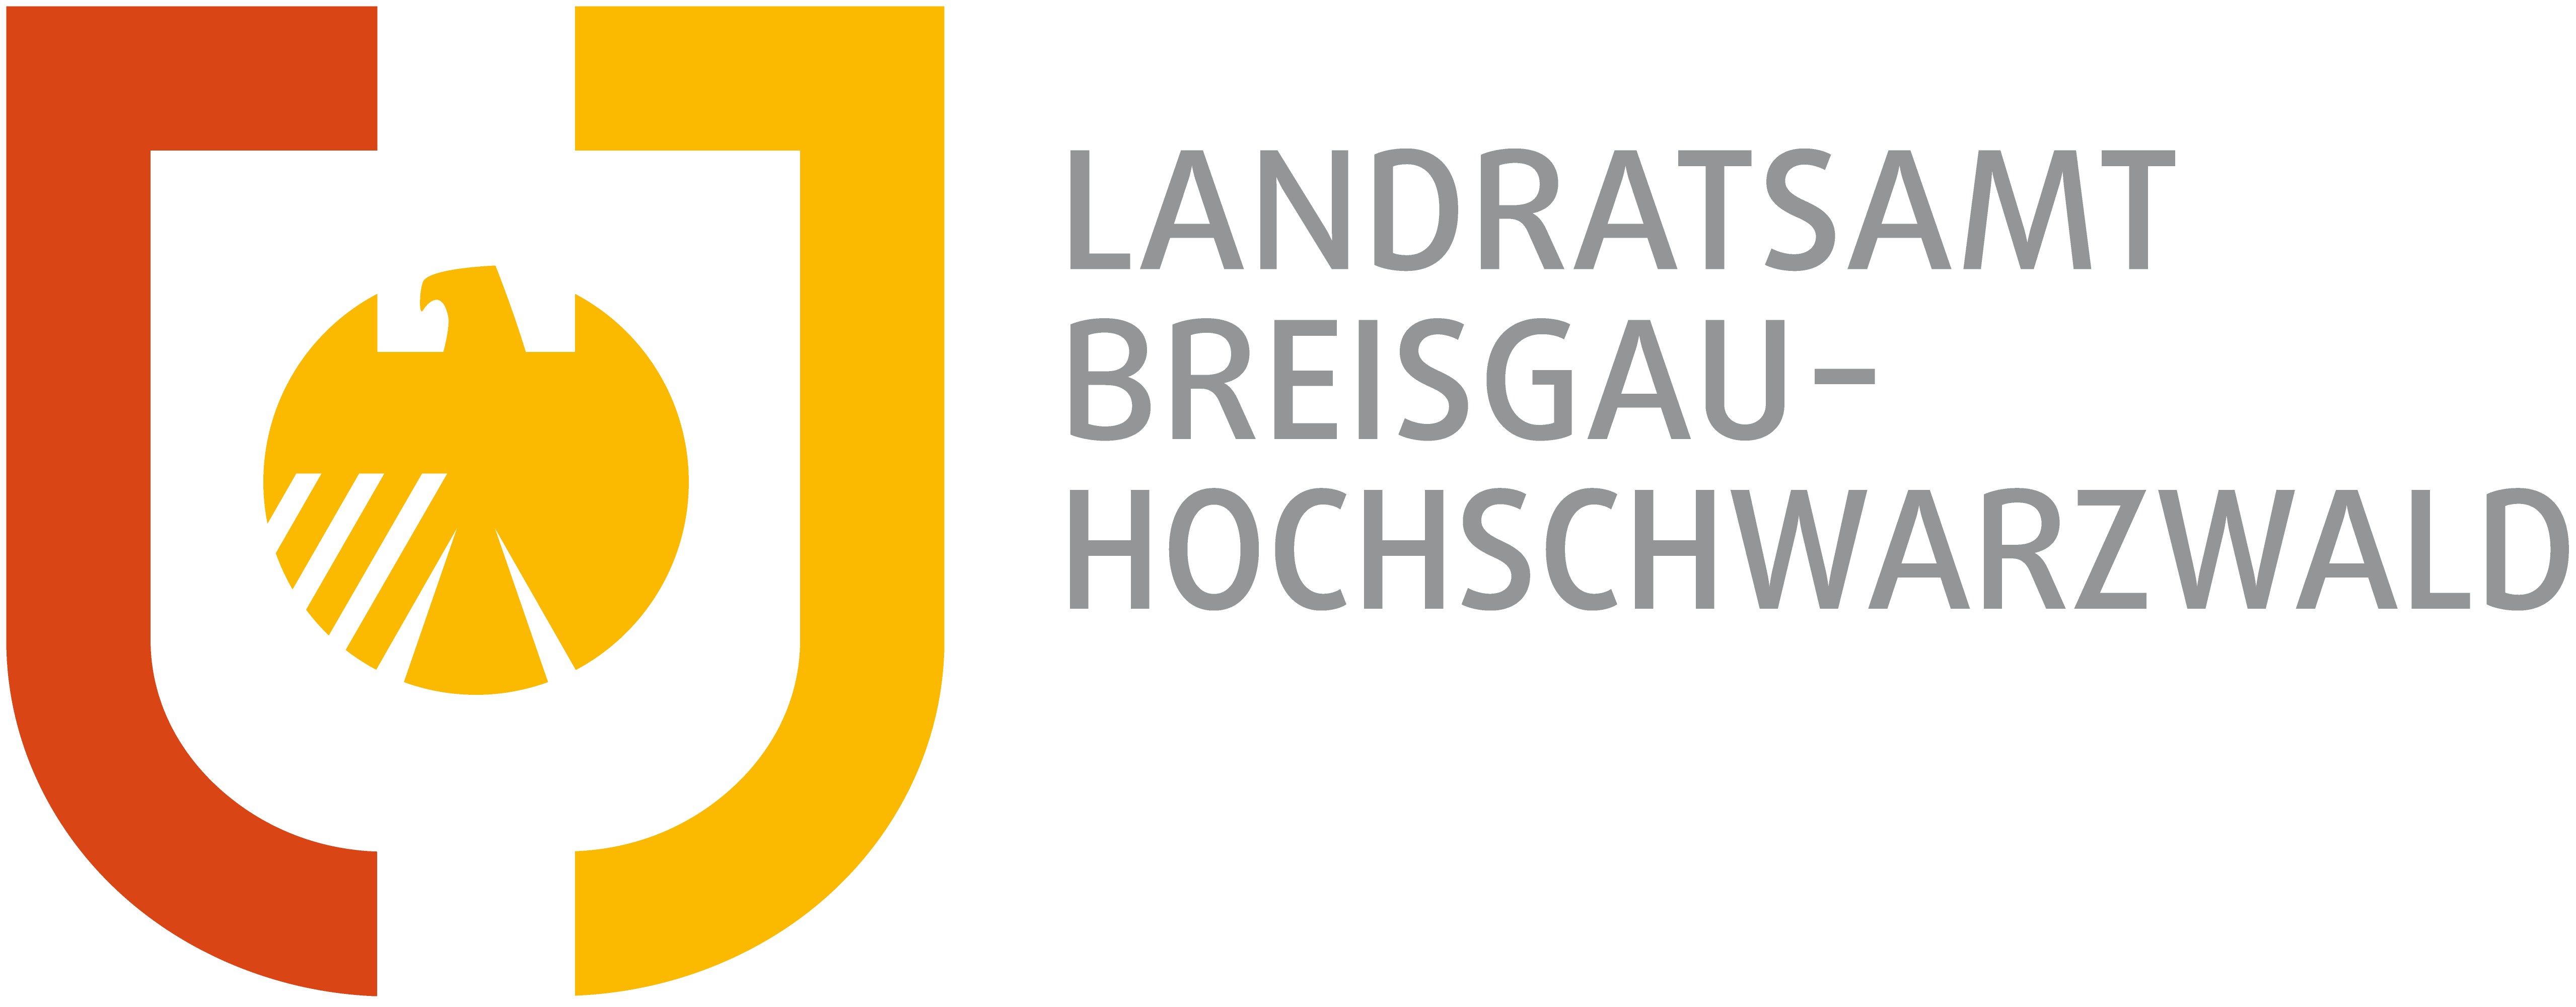 Logo Landratsamt Breisgau-Hochschwarzwald 